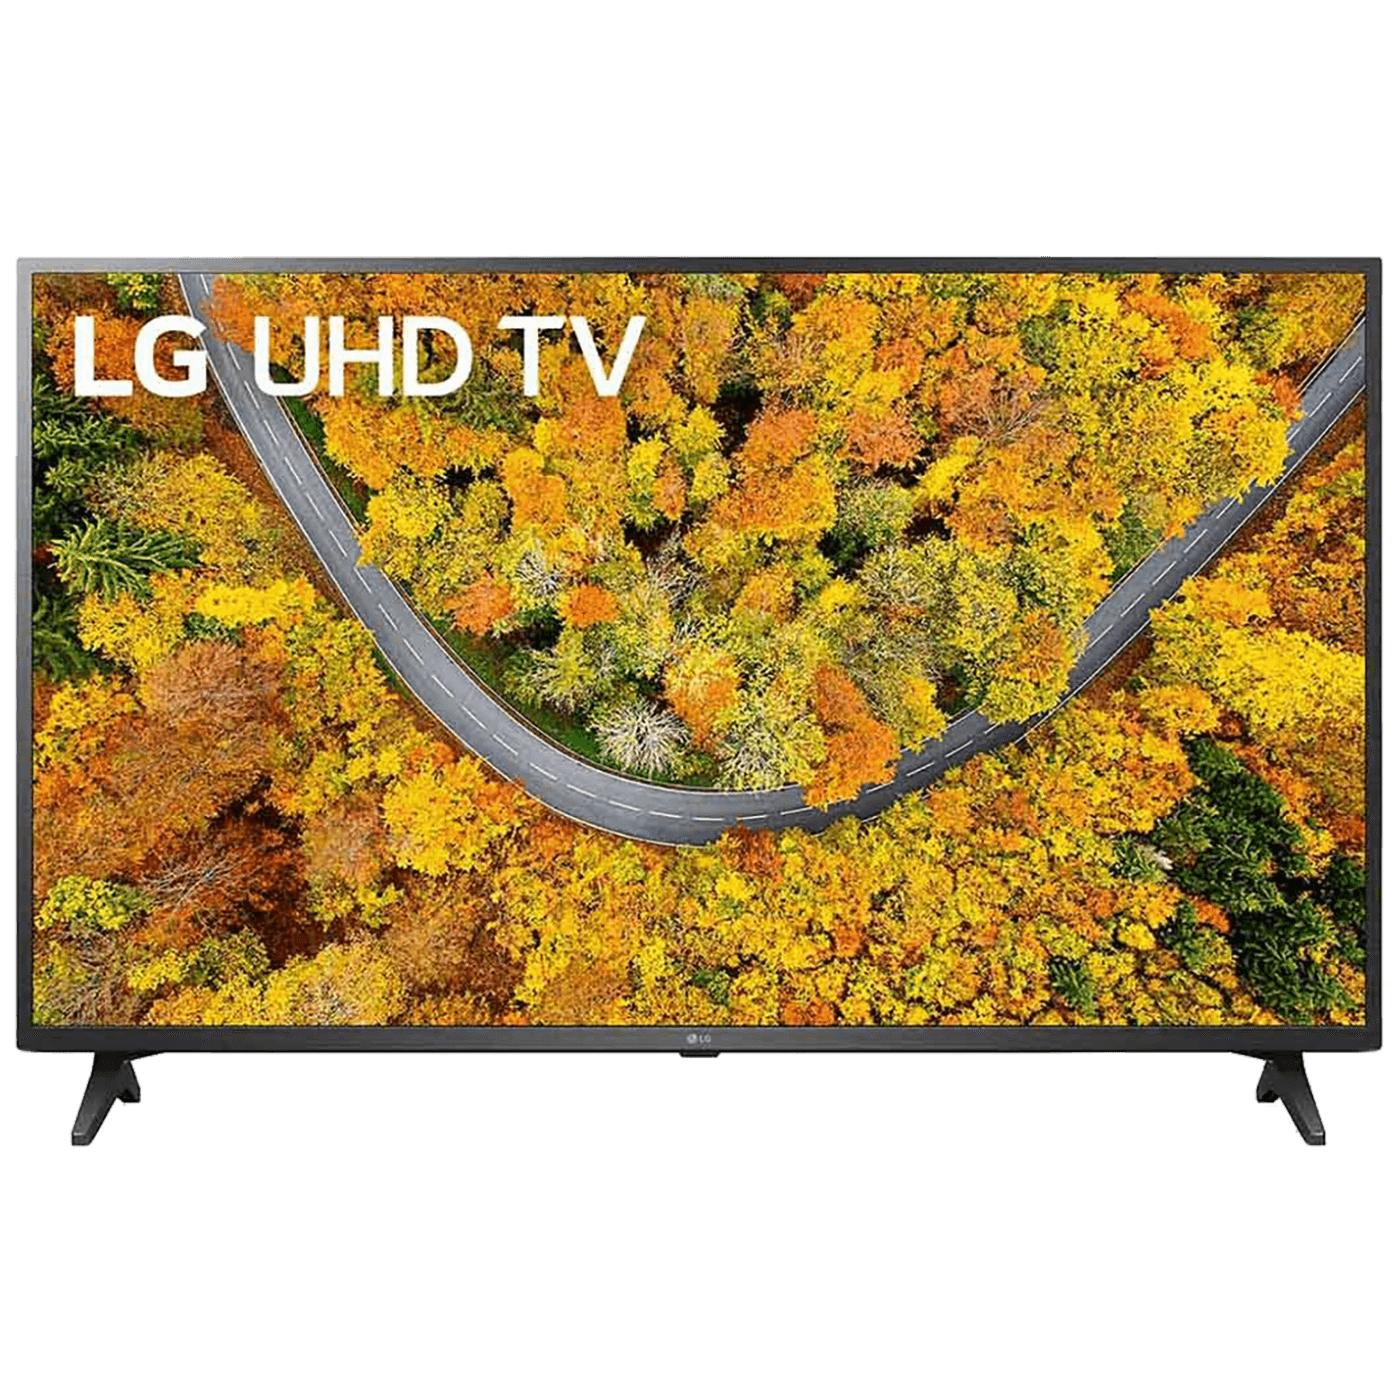 TV LG 43UP75003LF 43" Smart LED TV 4K UHD HDR